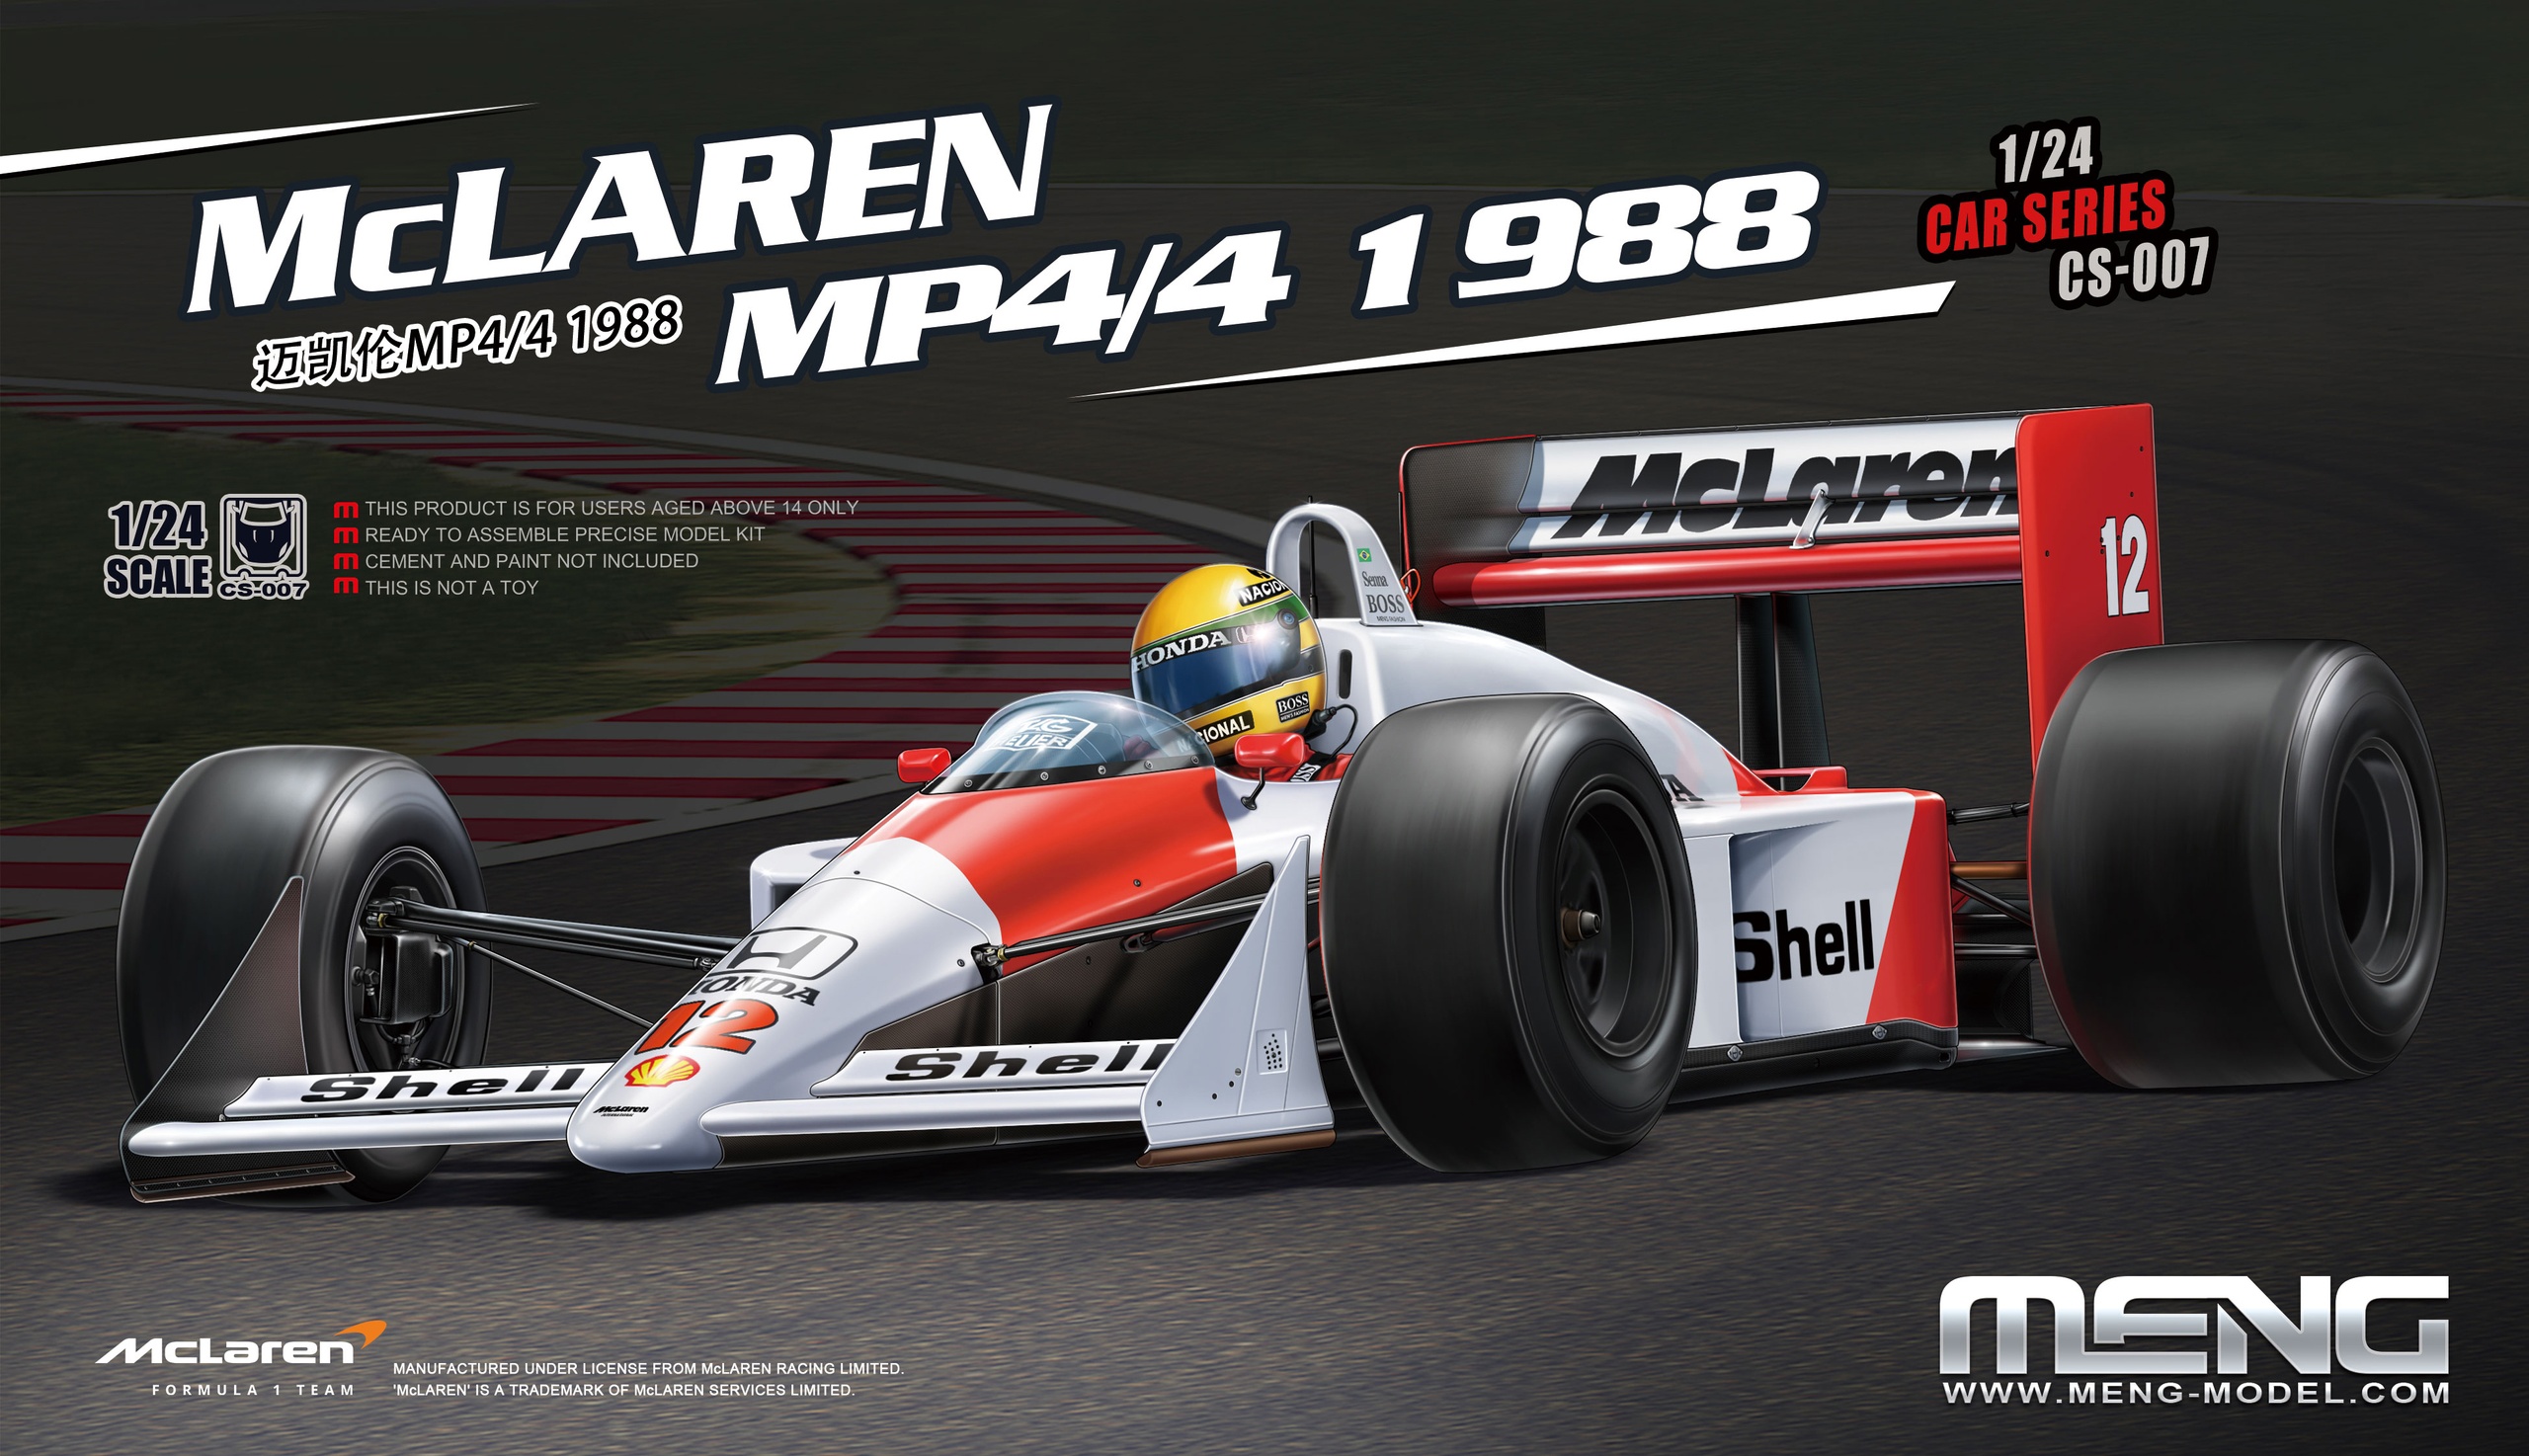 CS-007  автомобили и мотоциклы  McLaren MP4/4 1988  (1:24)